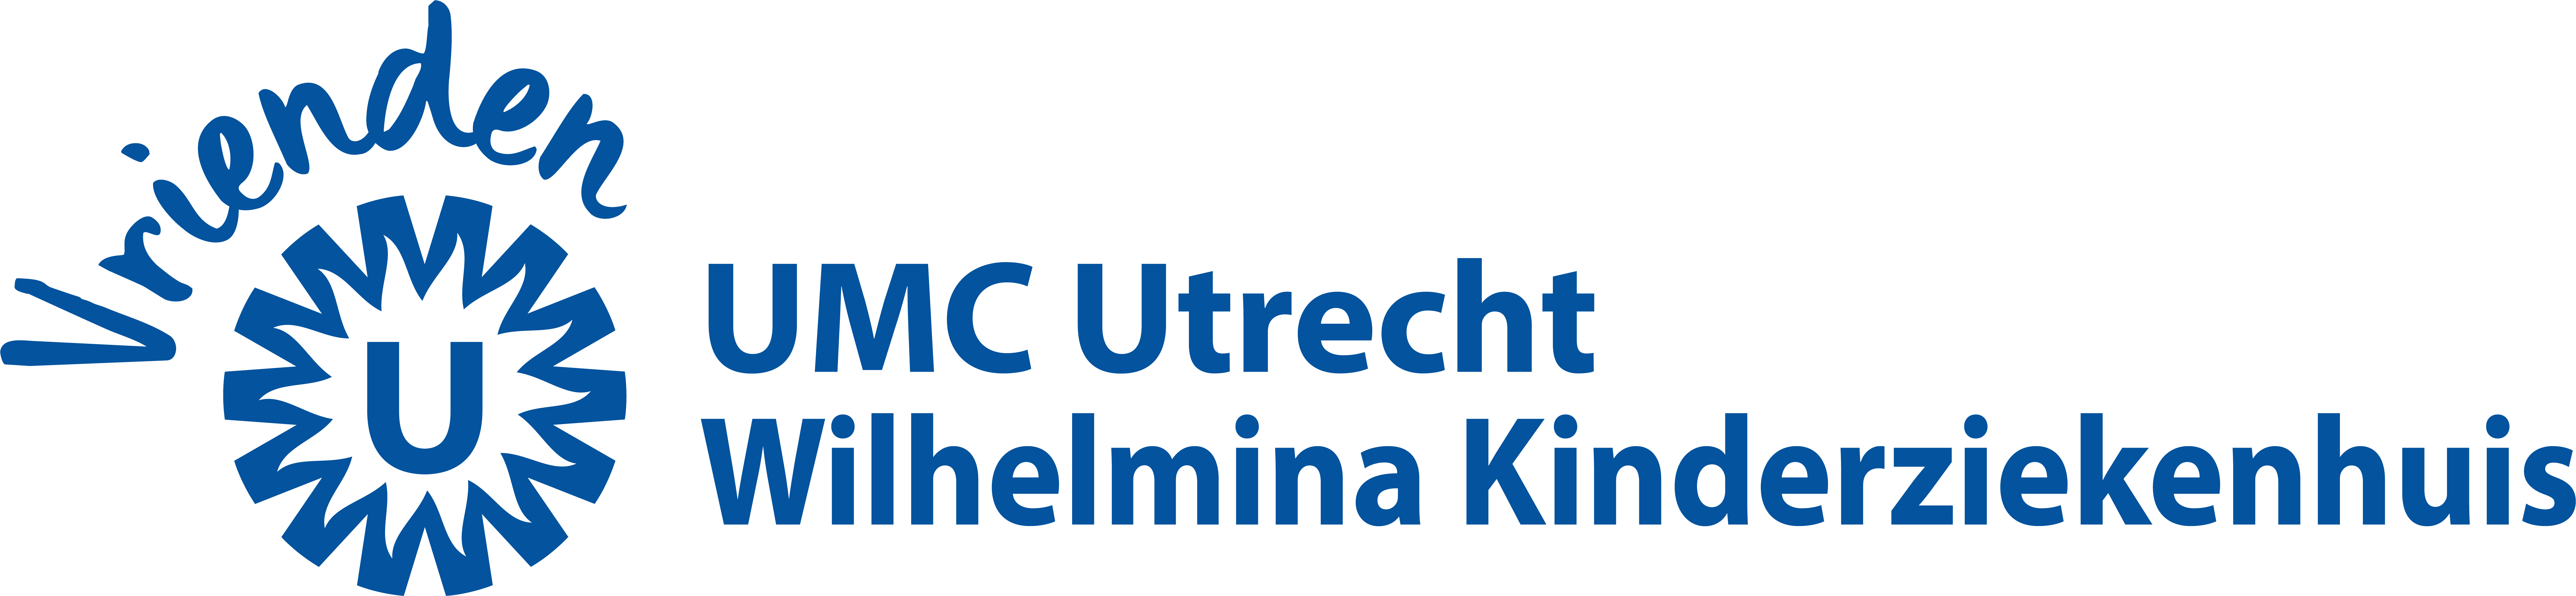 Ontvang de brochure nalaten aan het UMC Utrecht of WKZ 